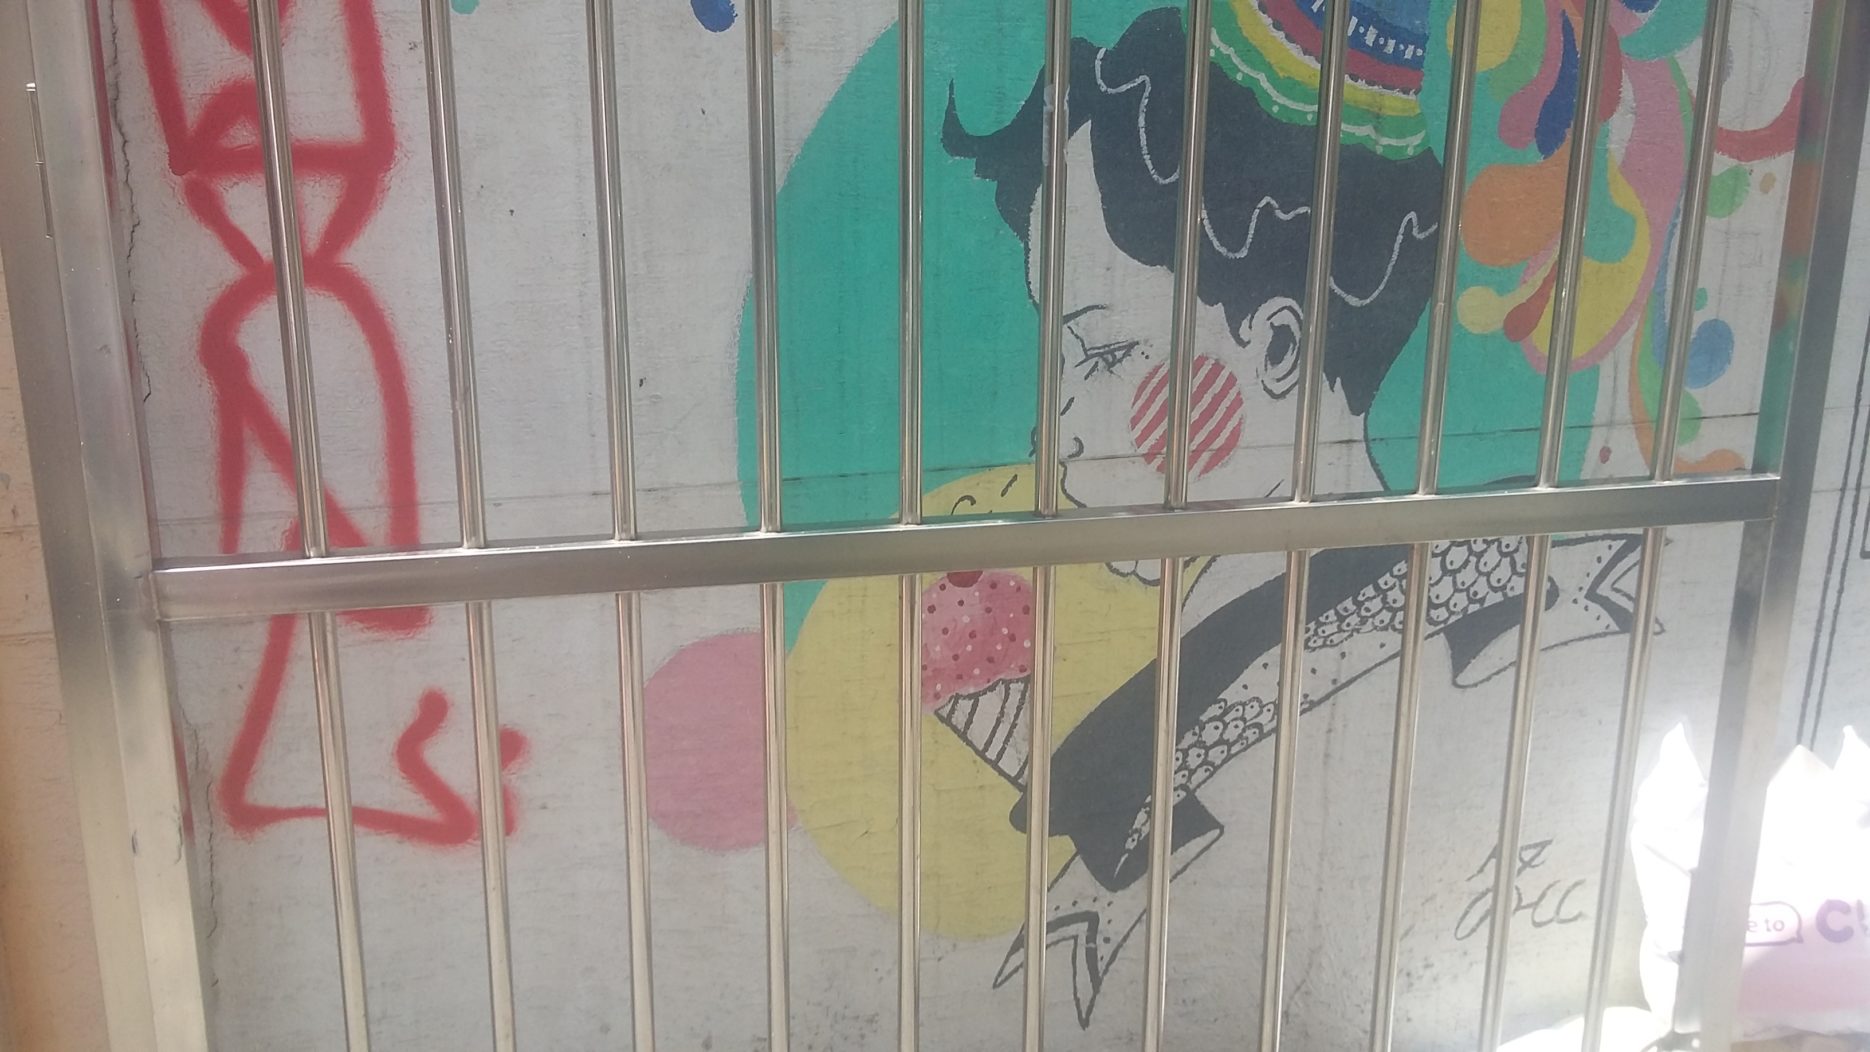 [nc] Fence girl Hongdae